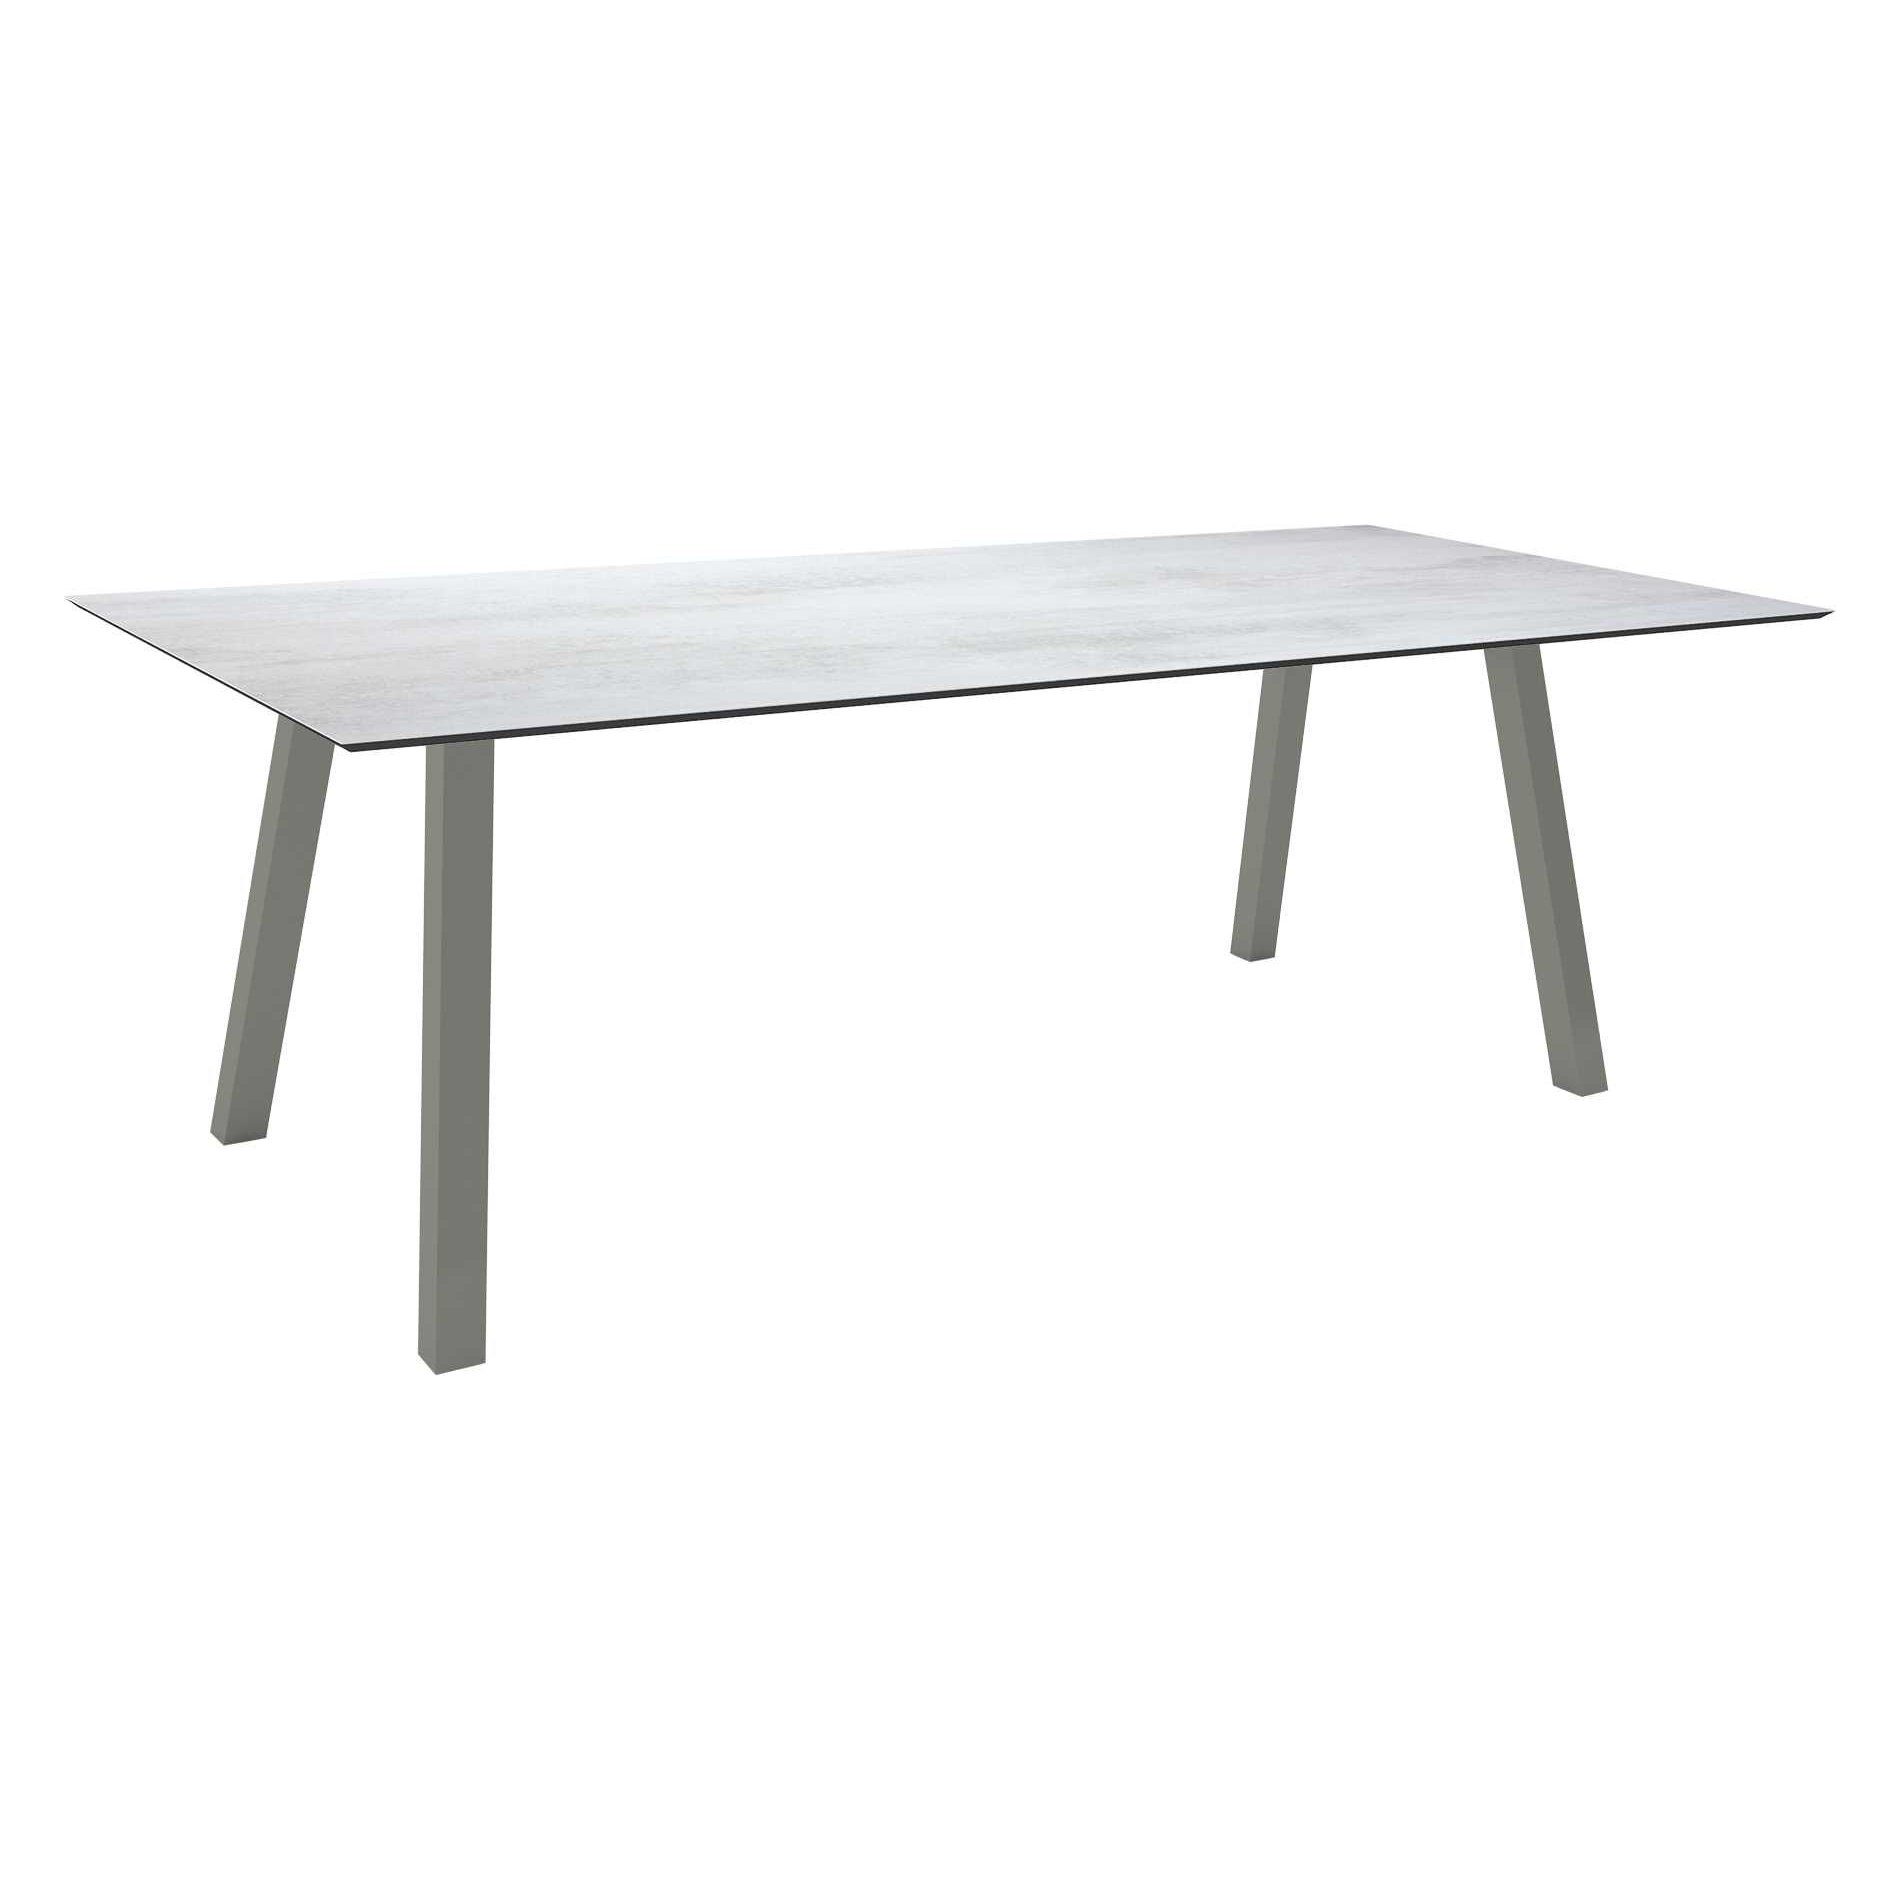 Stern Tisch "Interno", Größe 220x100cm, Alu graphit, Vierkantrohr, Tischplatte HPL Zement Hell